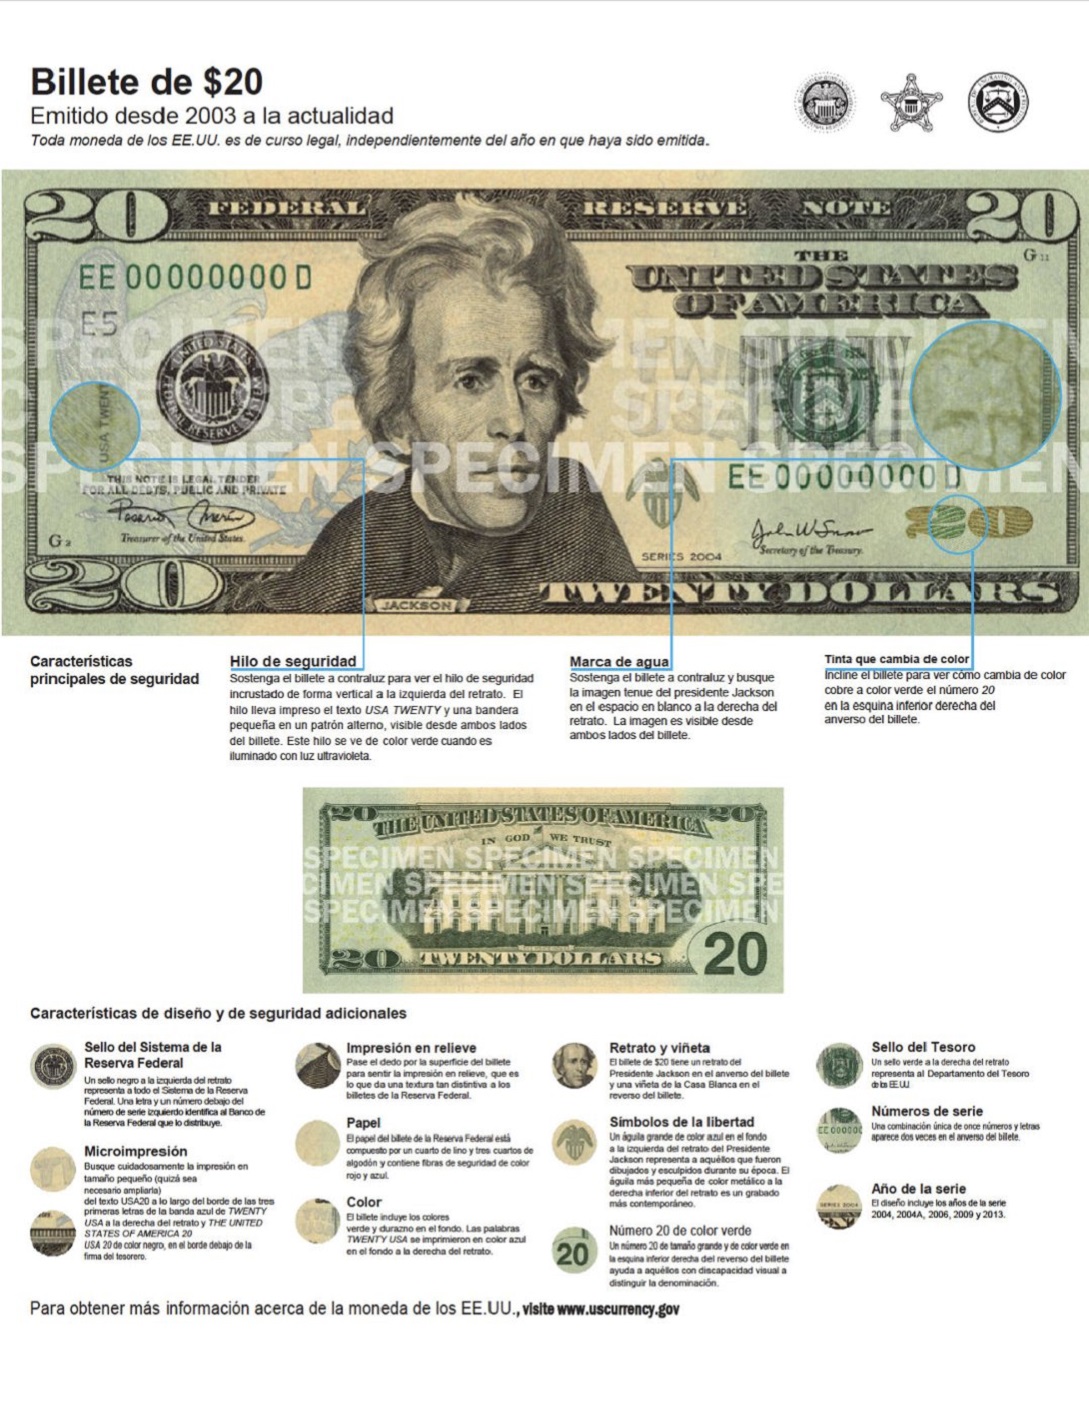 Cómo identificar un billete de dólar falso